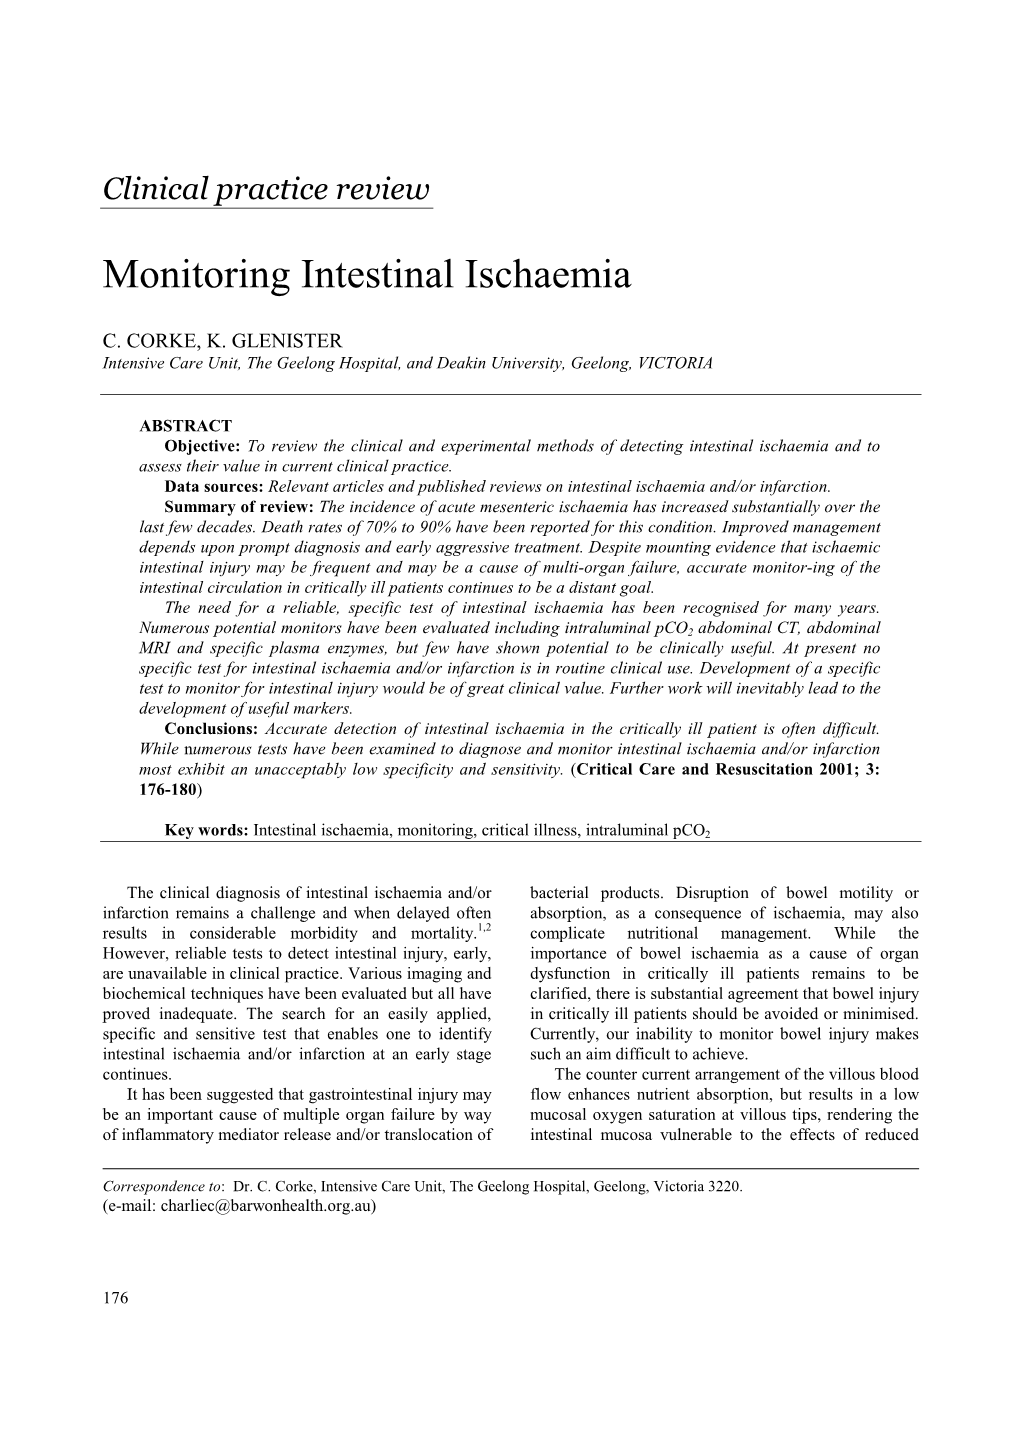 Monitoring Intestinal Ischaemia